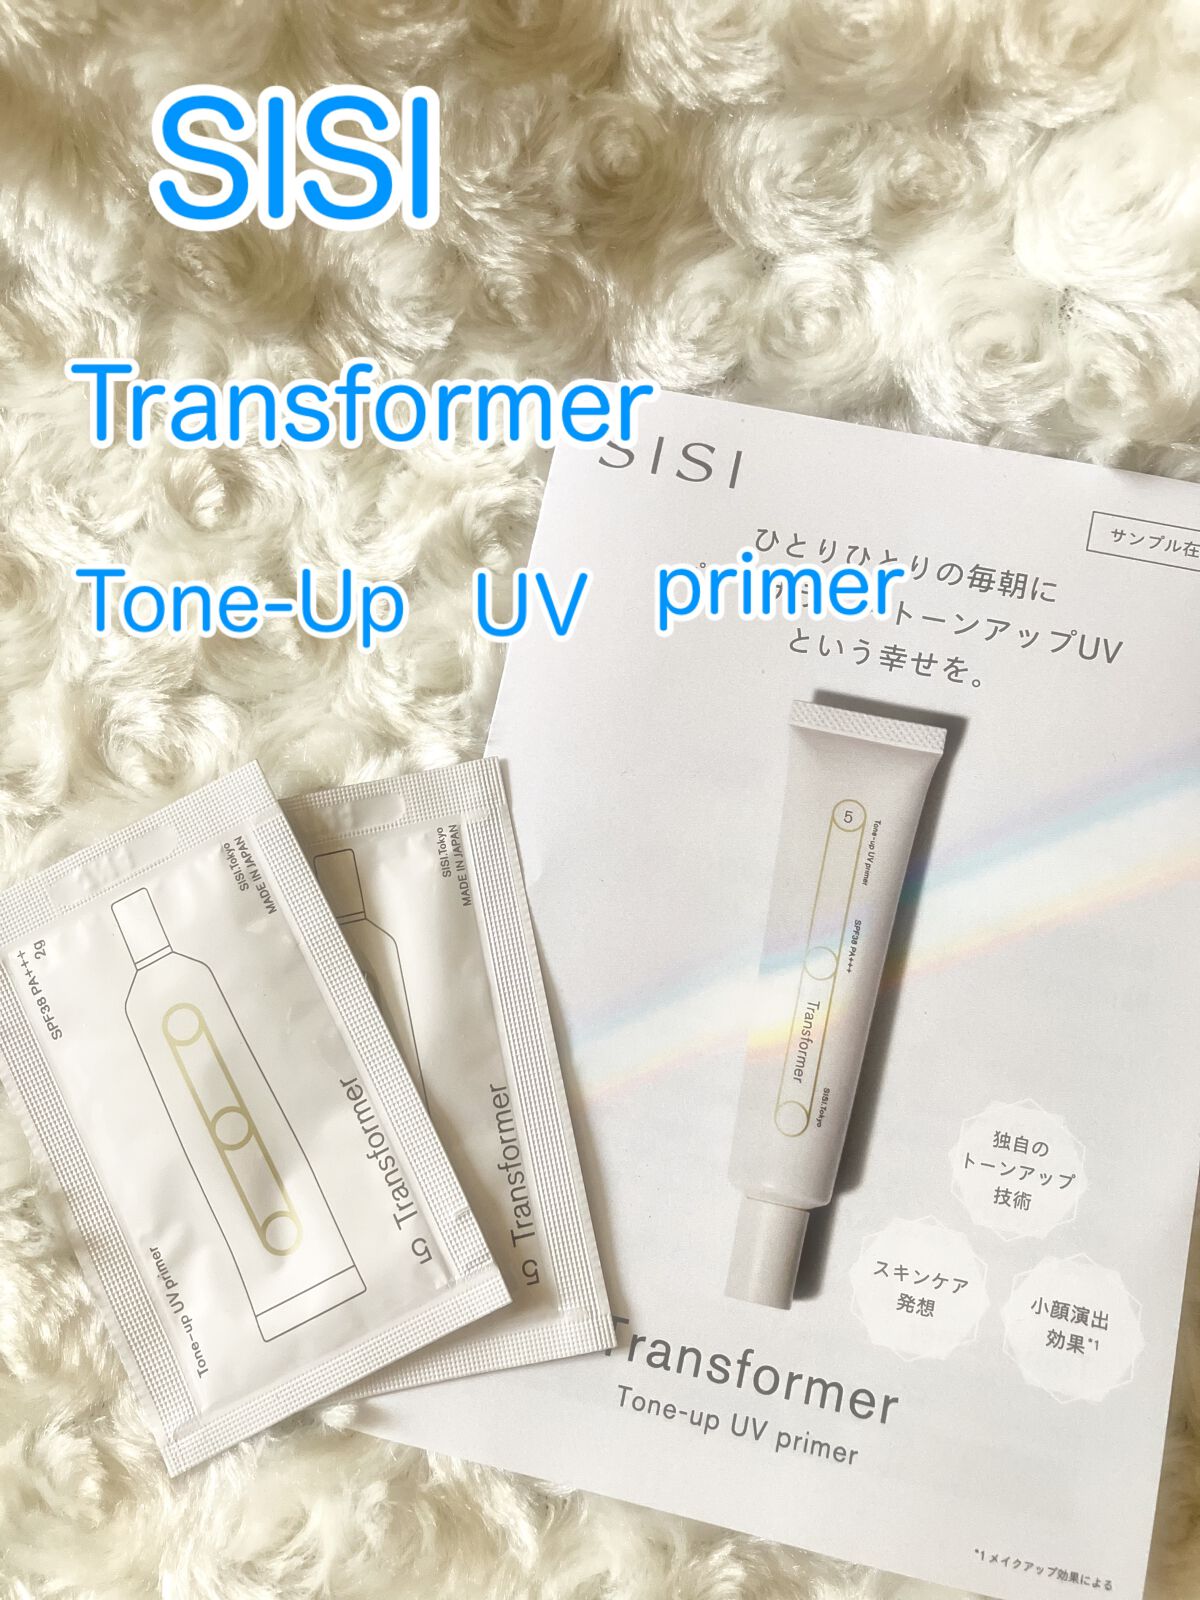 高評価のおせち贈り物 SISI トランスフォーマートーンアップUVプライマー コスメ・香水・美容 